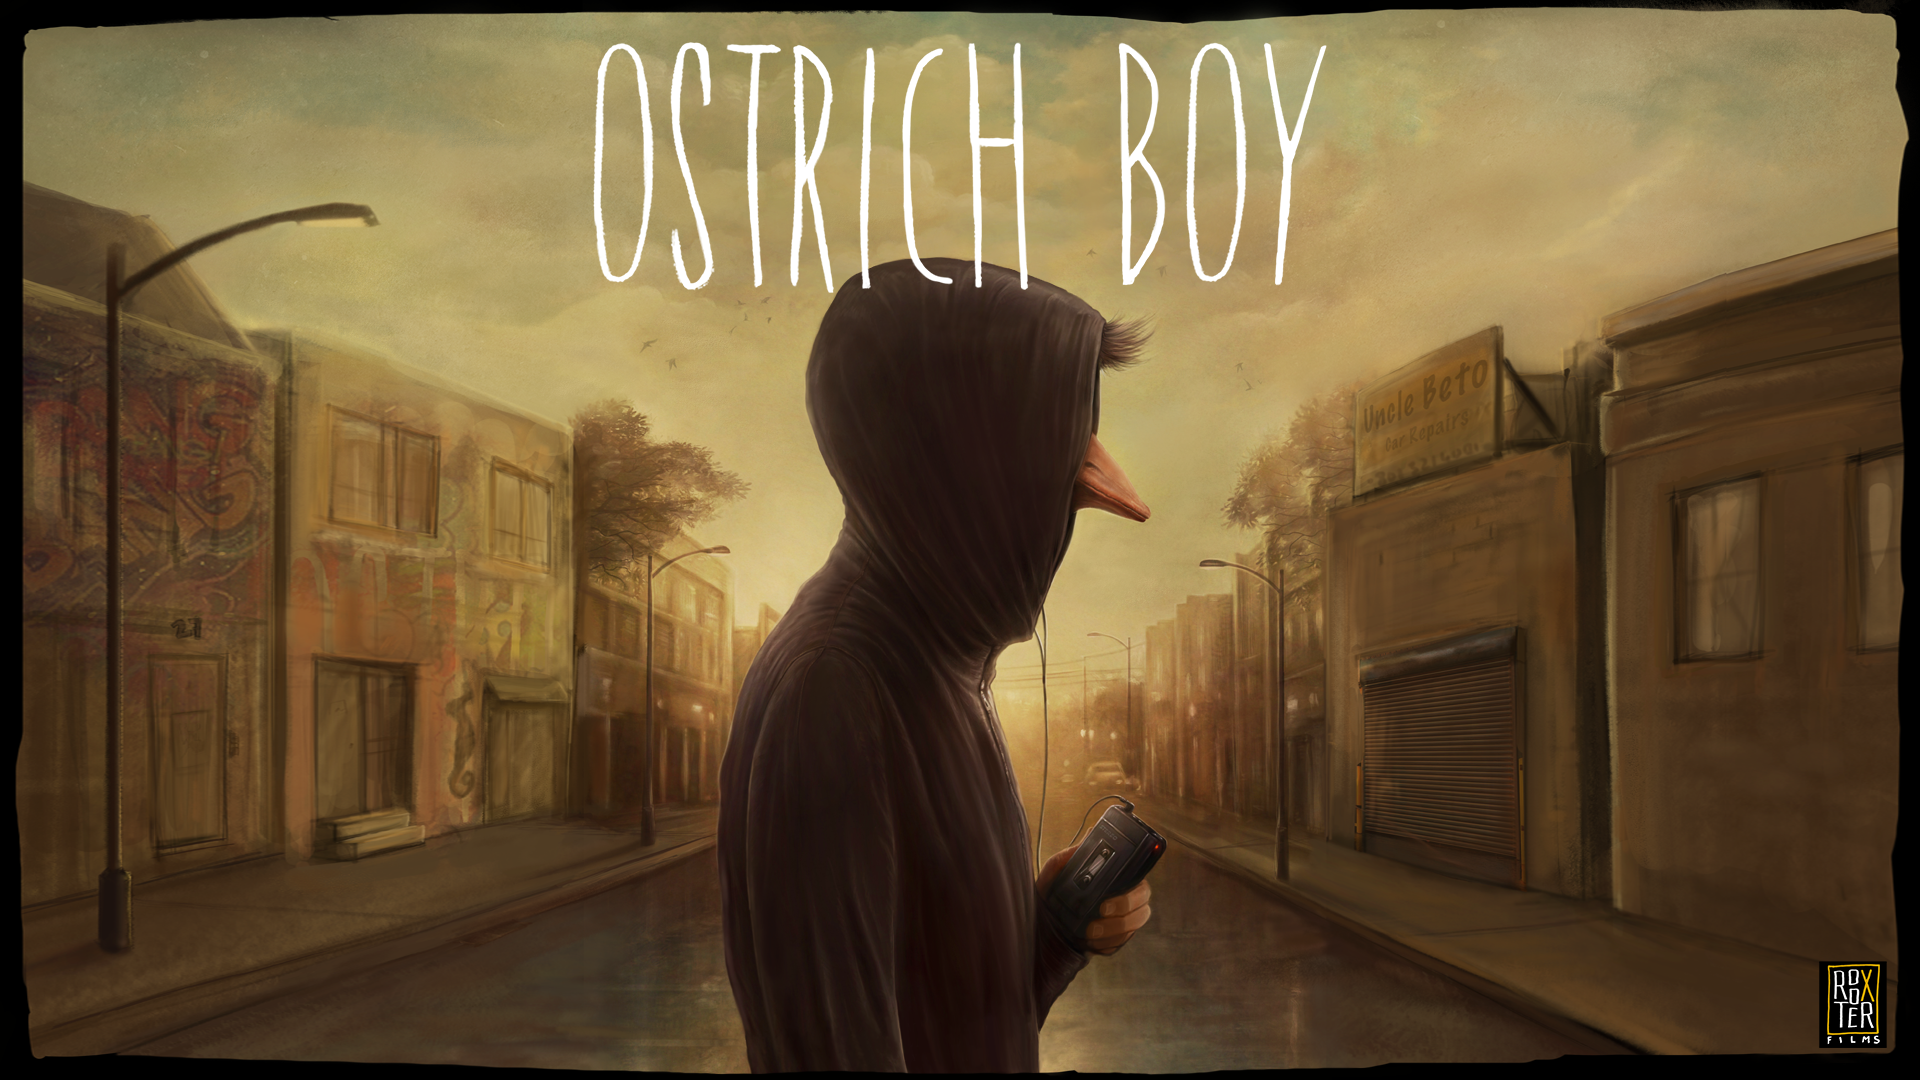 Ostrich Boy